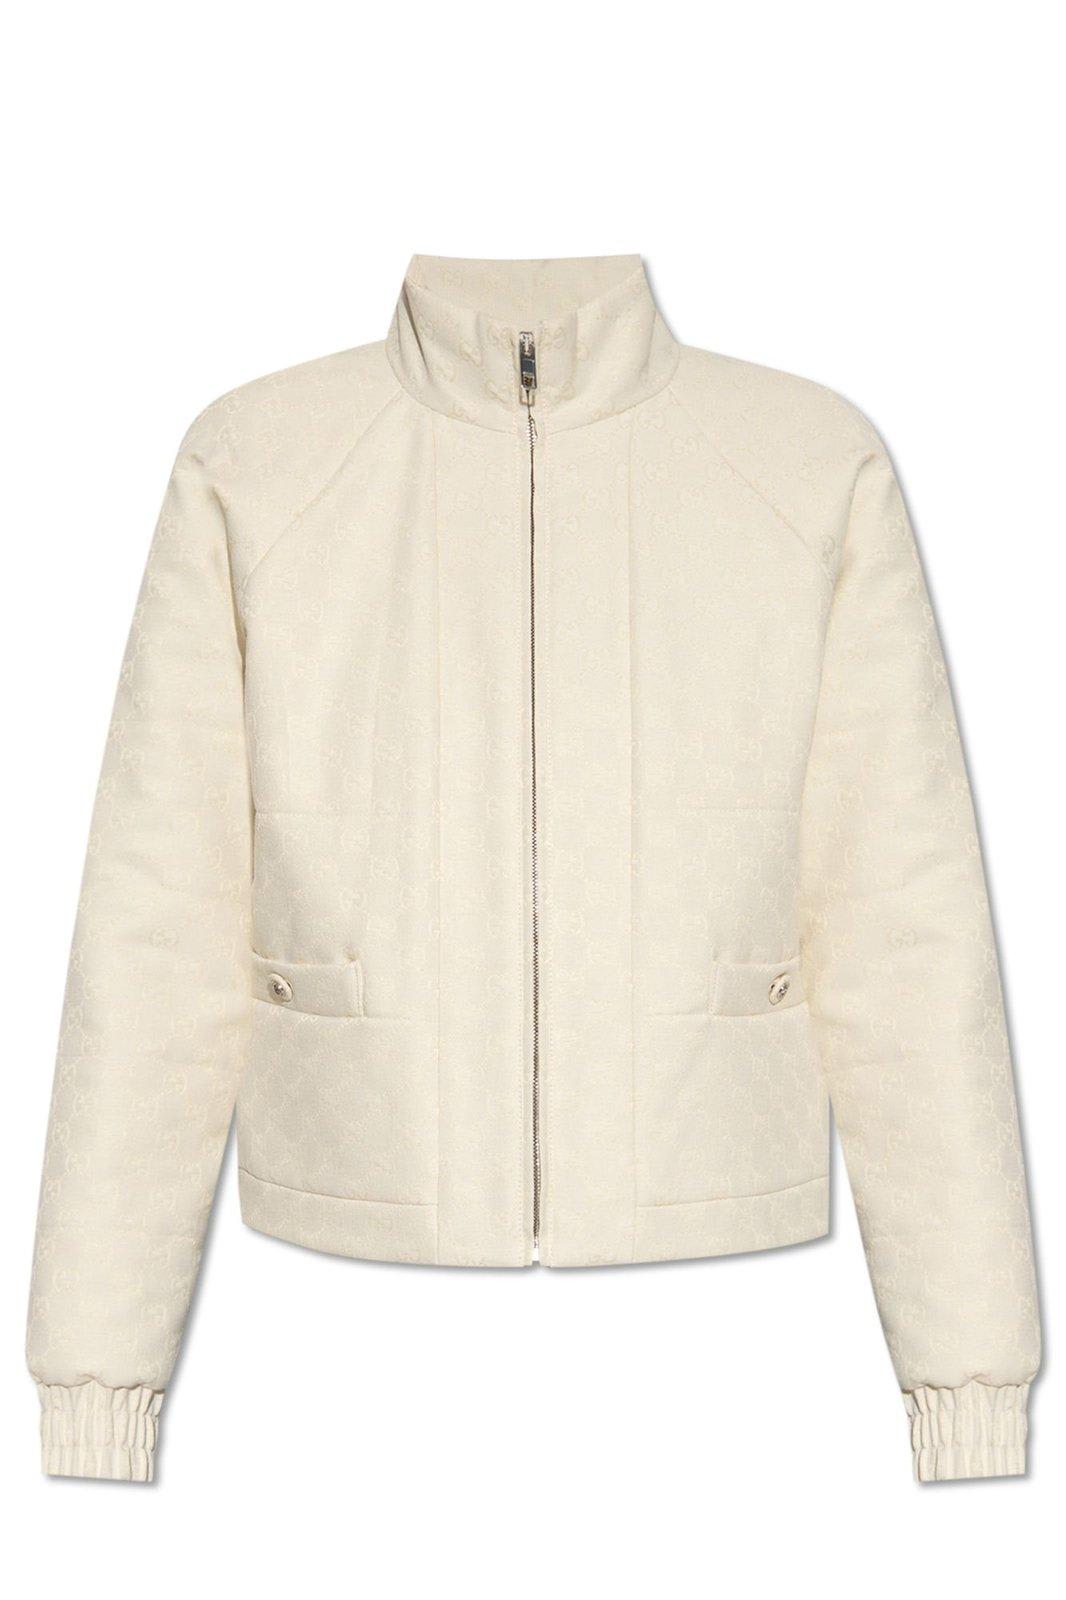 Gucci Monogrammed Zip-up Jacket